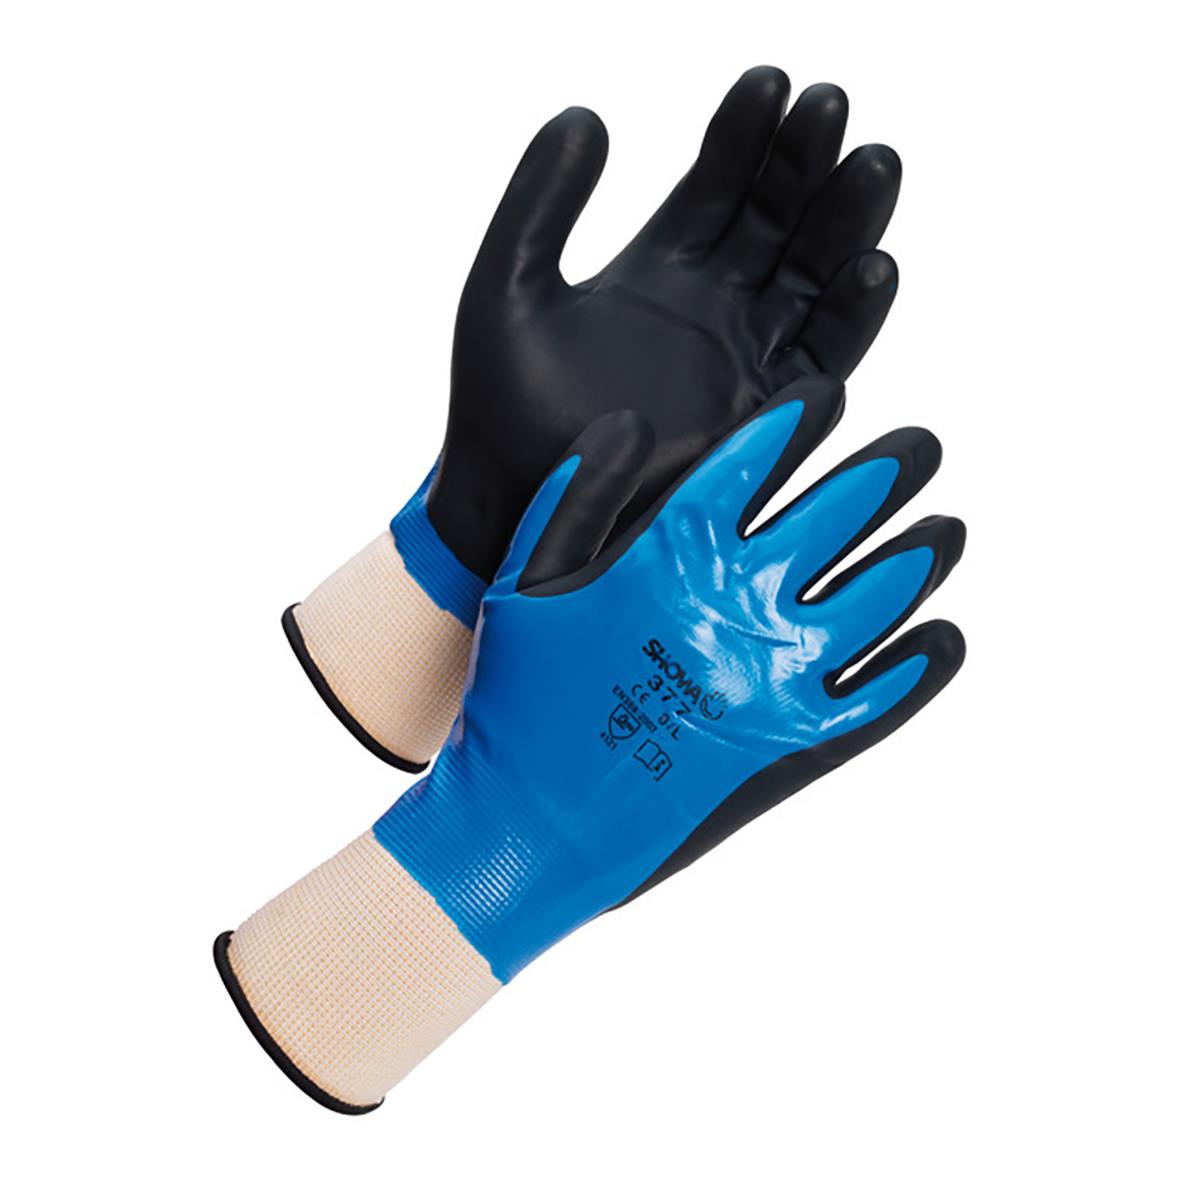 Handske Showa 377 nitril Foam Grip